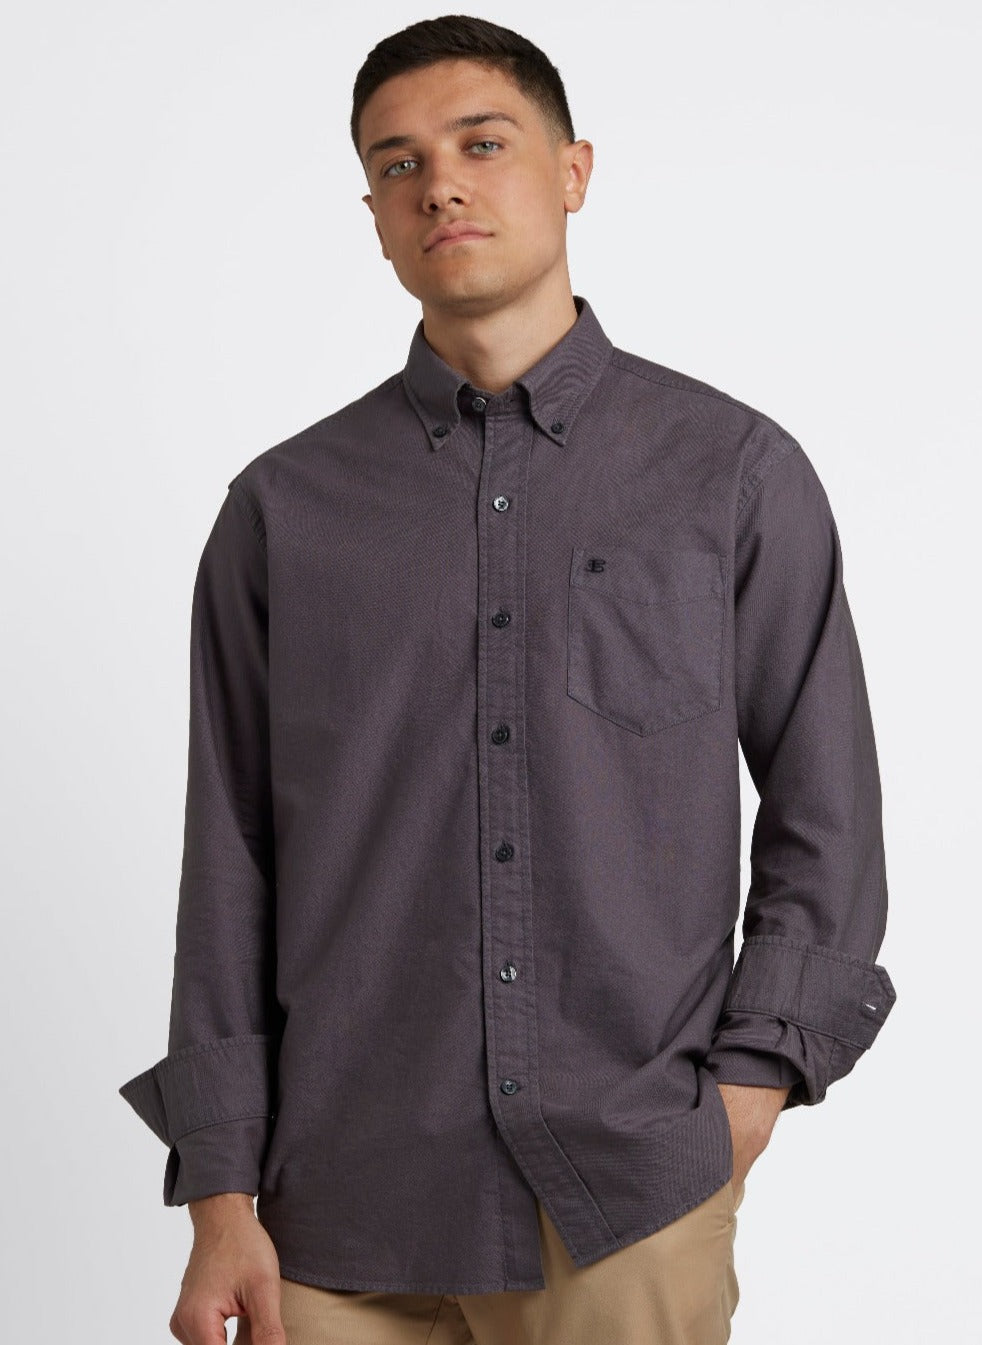 Beatnik Oxford Garment Dye Shirt - Charcoal - Ben Sherman